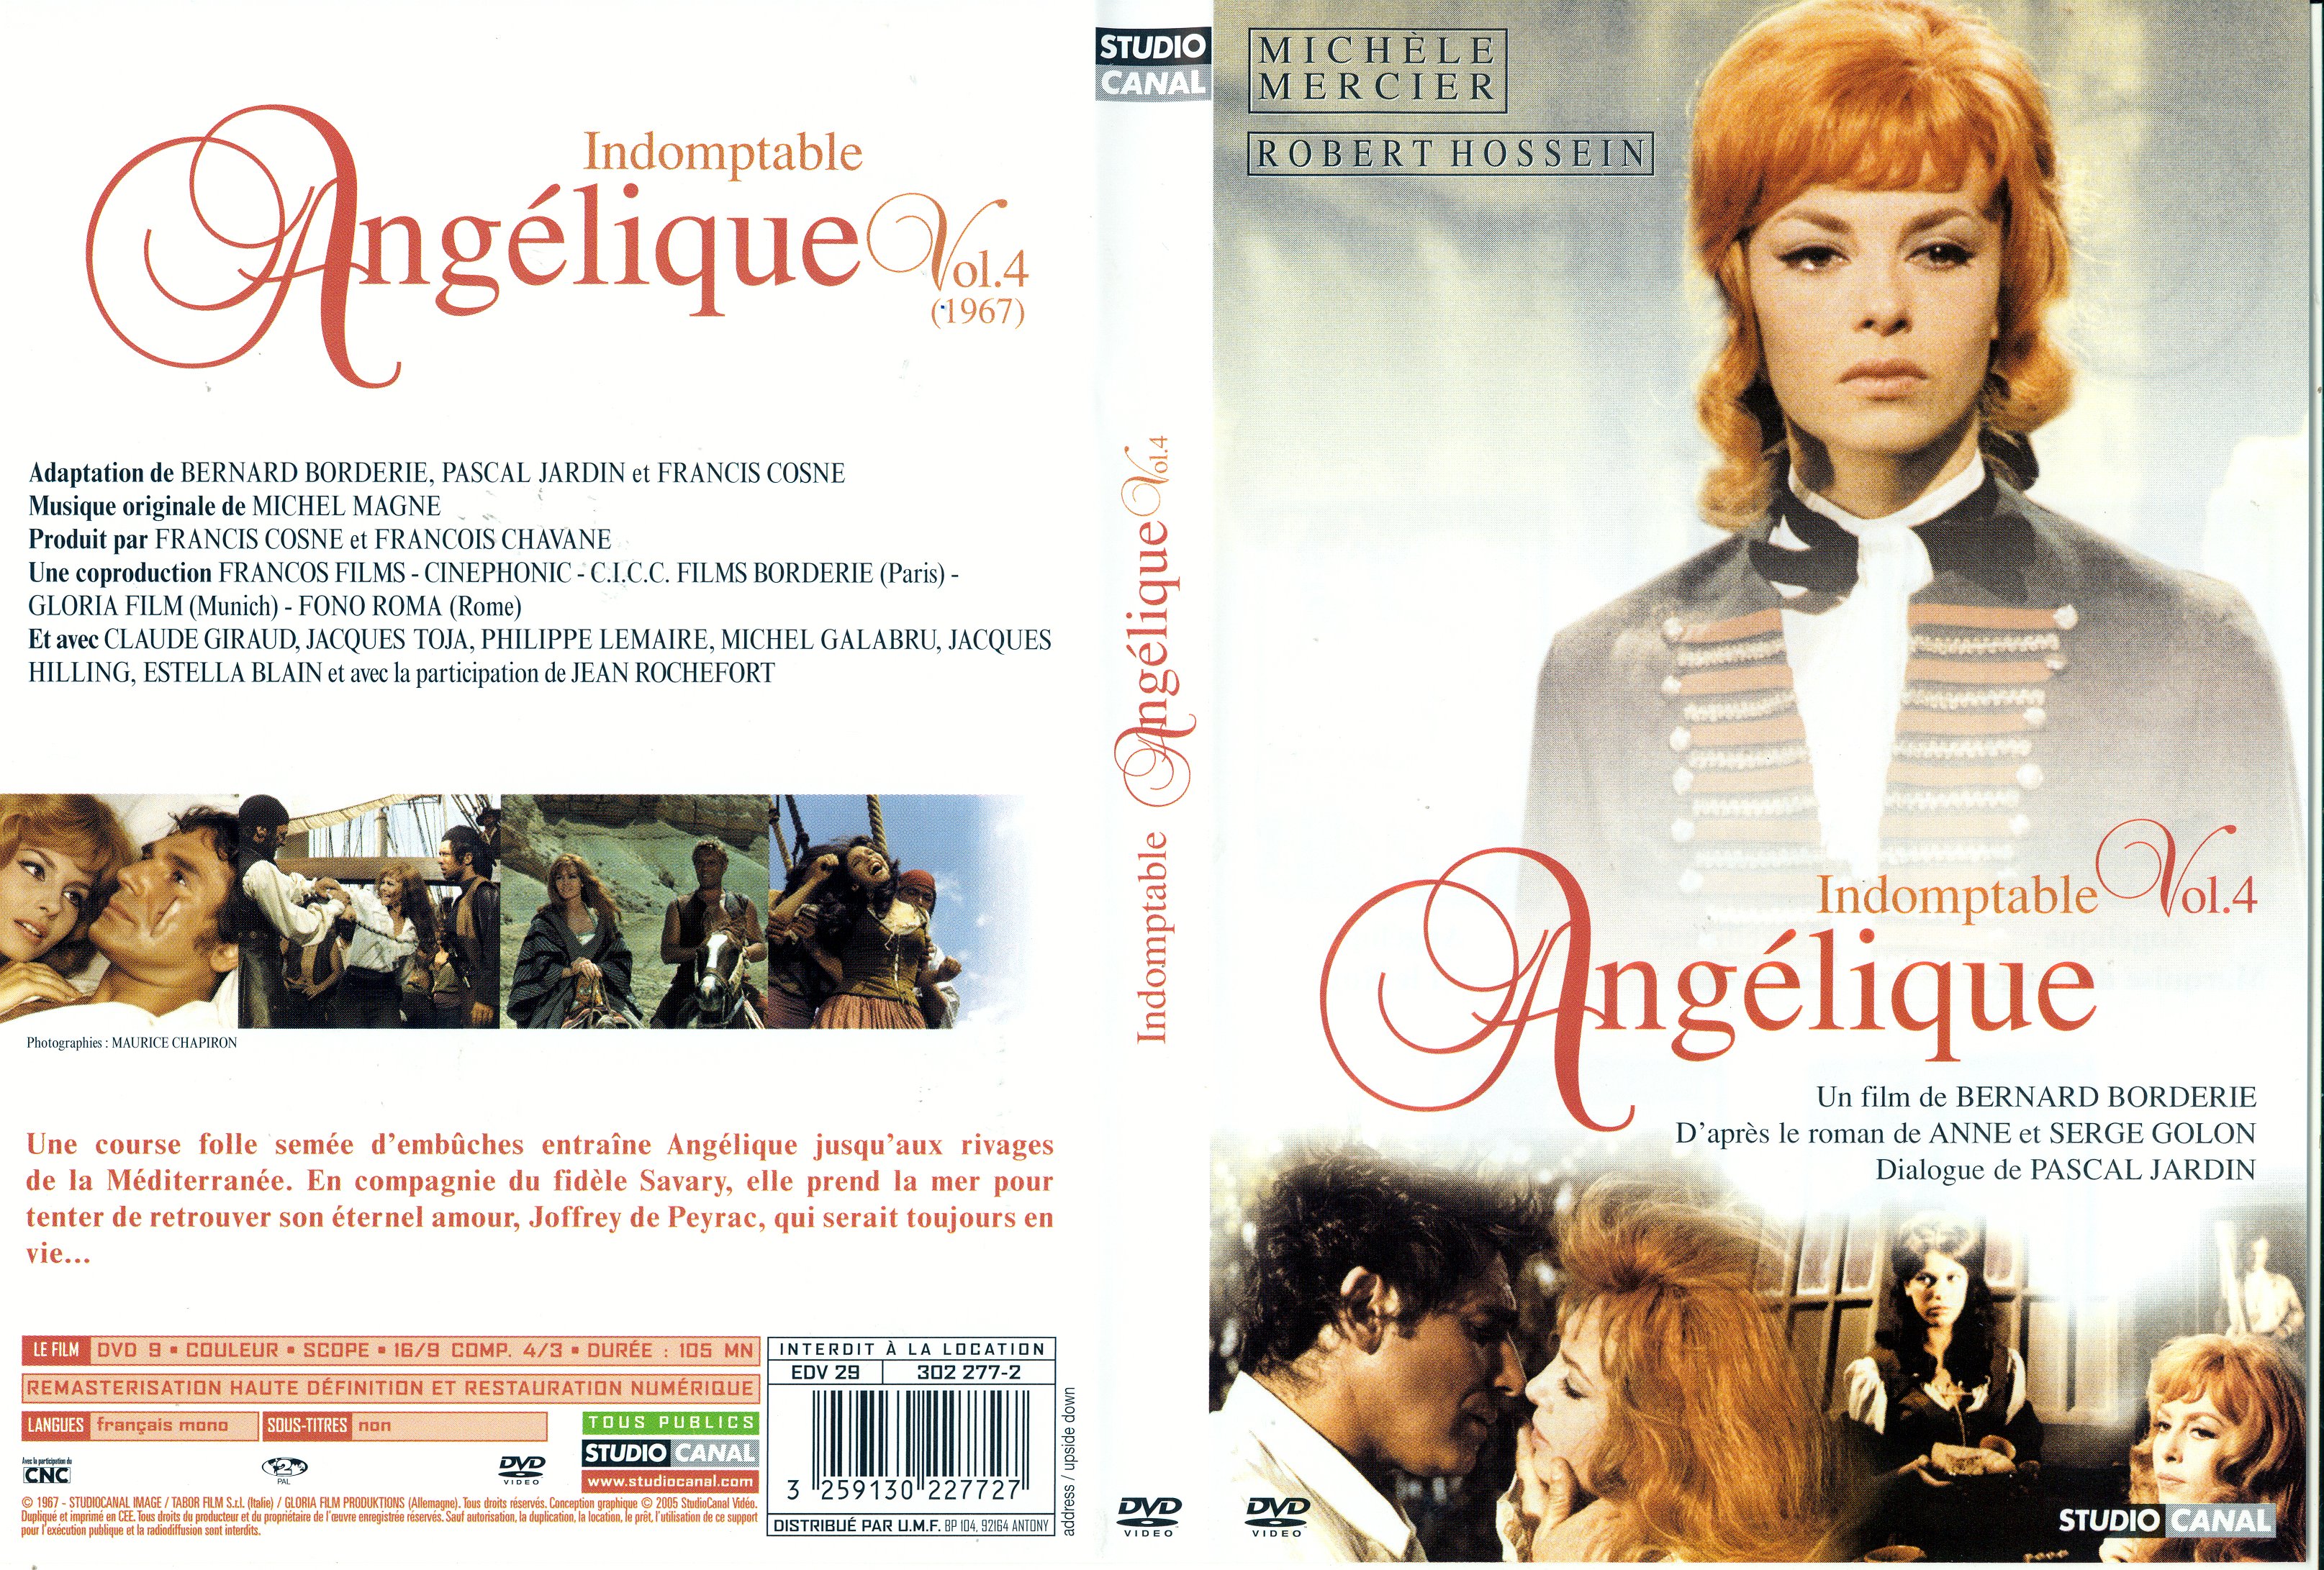 Jaquette Dvd De Angélique Indomptable Angélique V2 Cinéma Passion